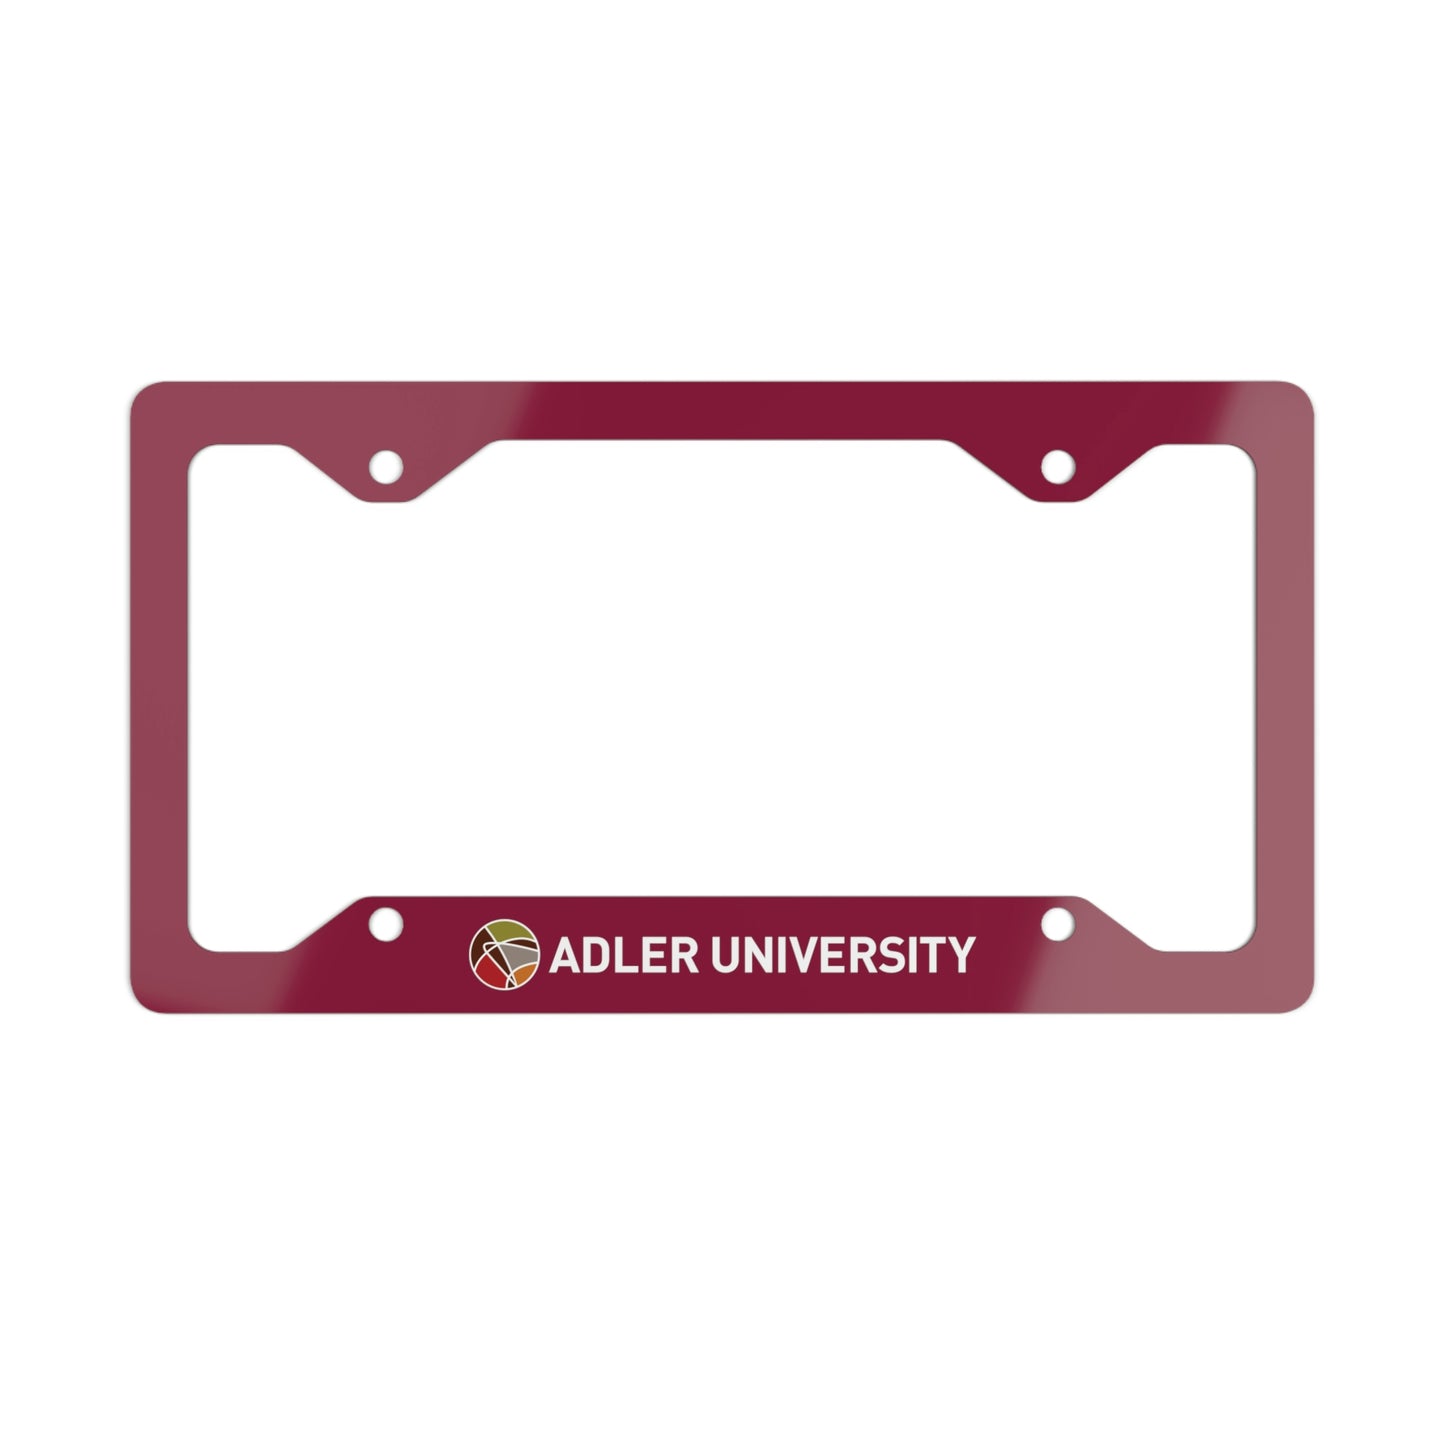 Adler University Metal License Plate Frame